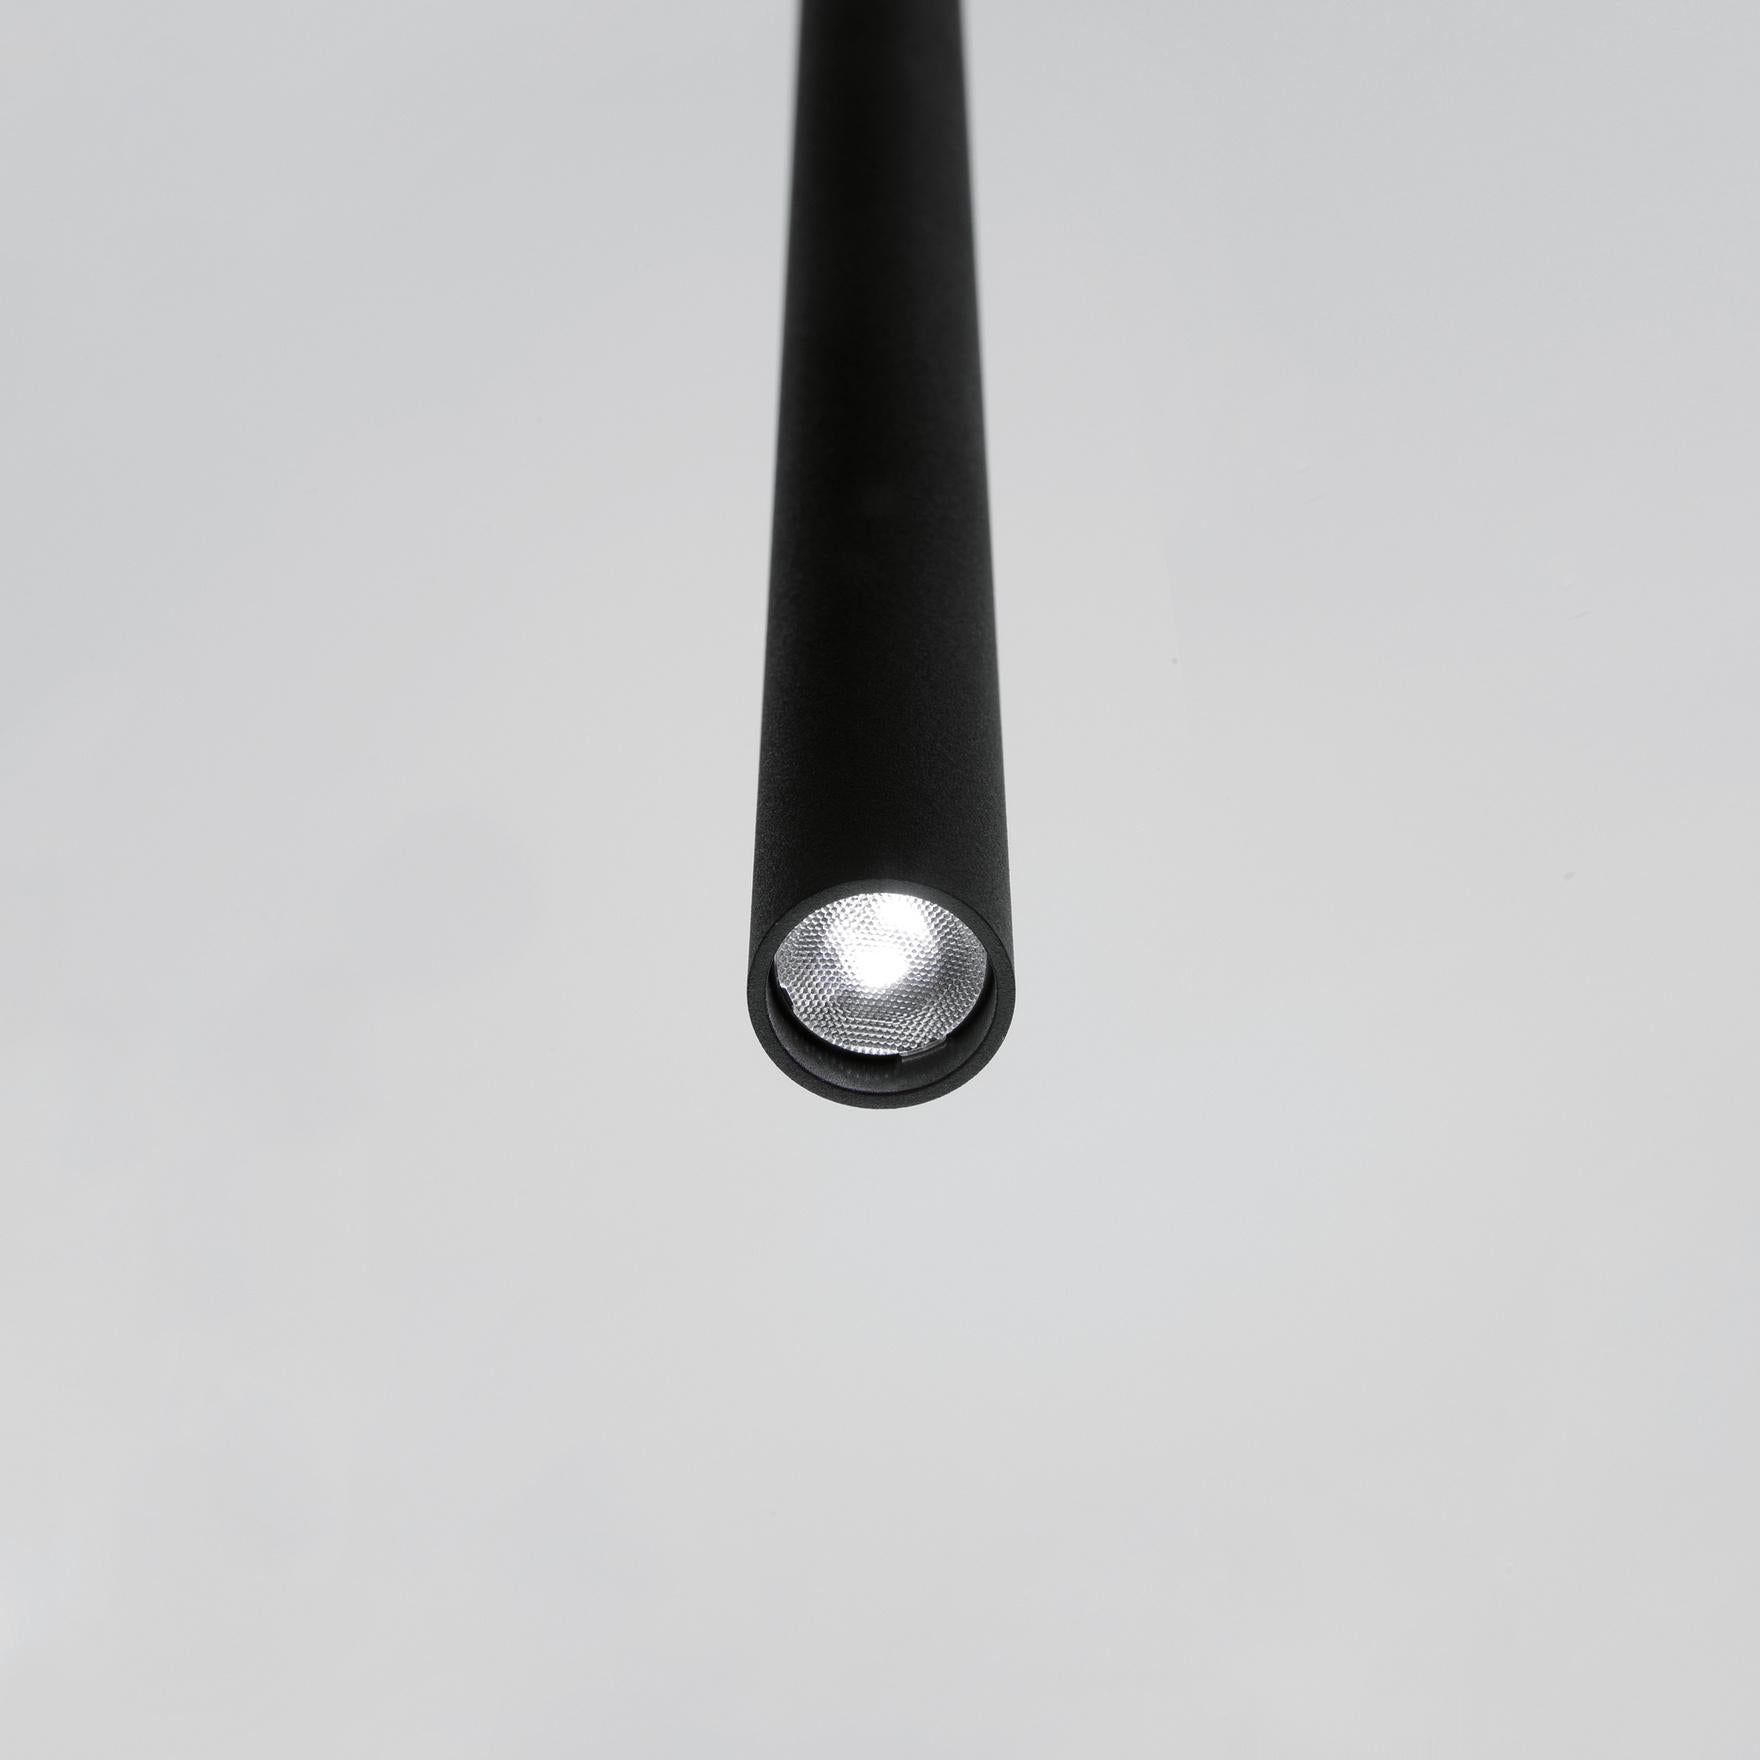 Davide Groppi MISS pendant lamp 1-10V in Matt white by Omar Carraglia  For Sale 5